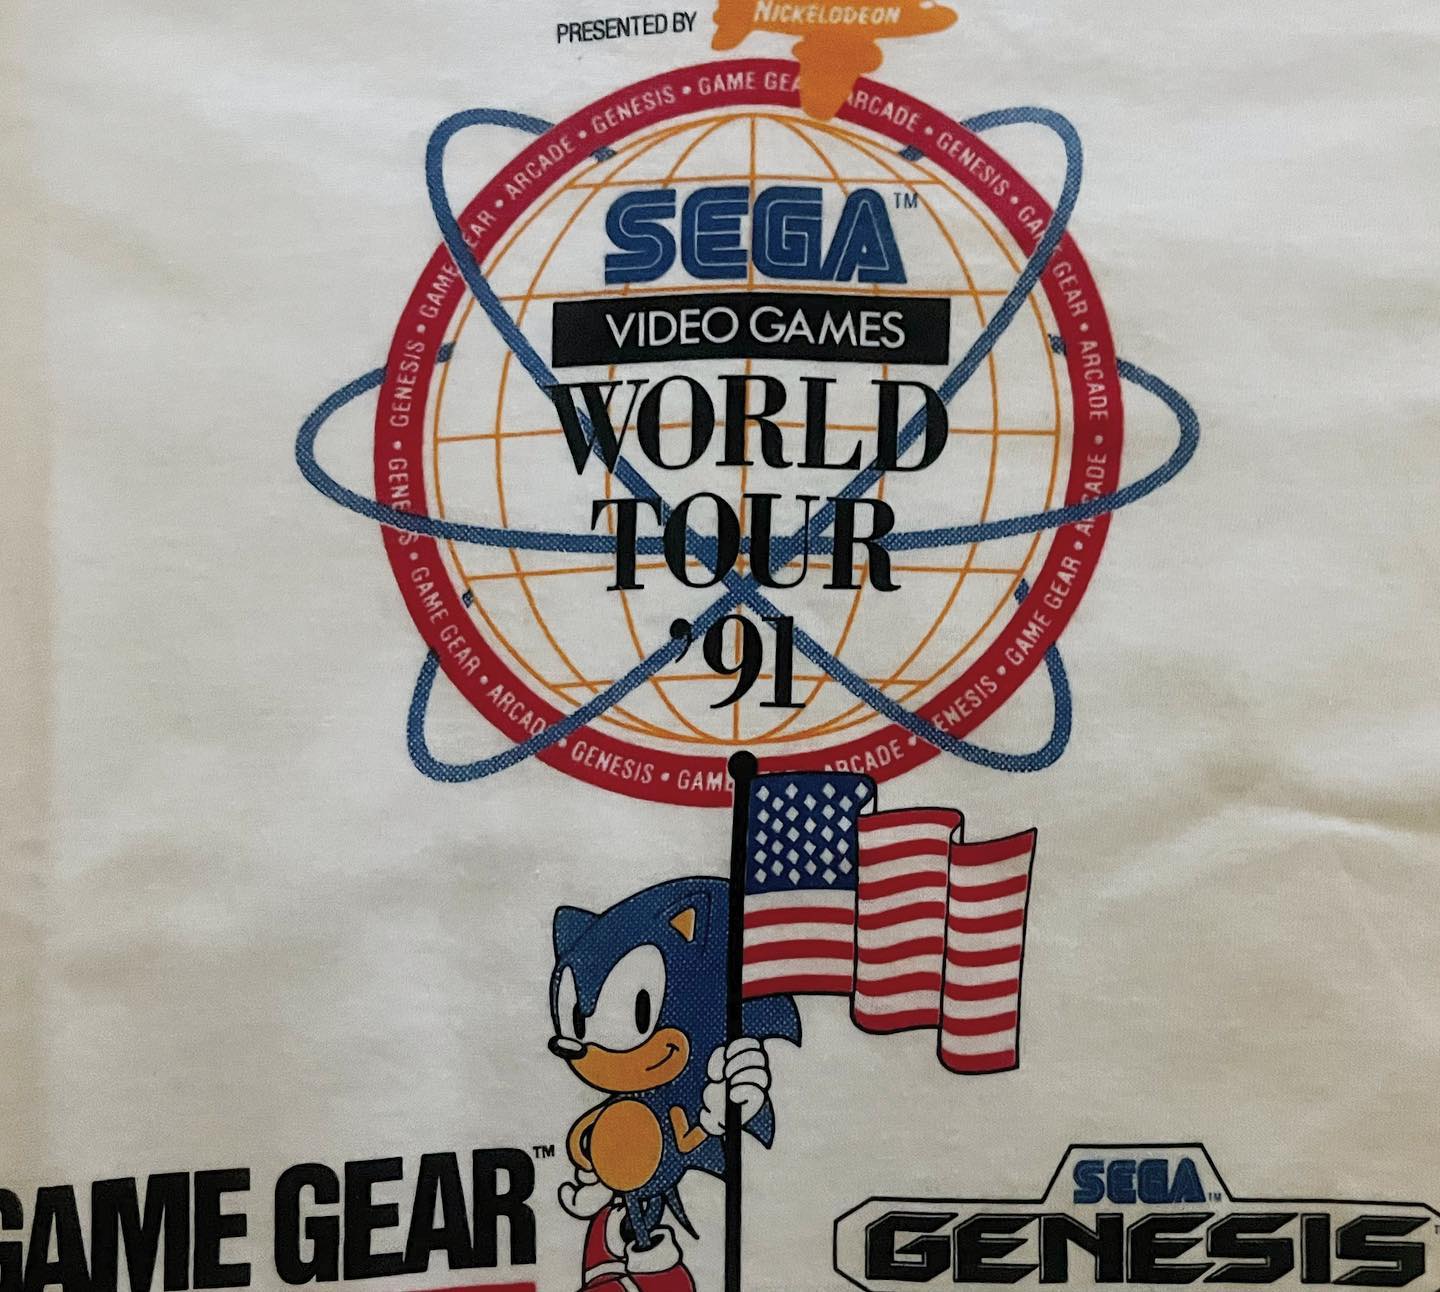 SegaWorldTour91 T-Shirt Detail Front.jpg